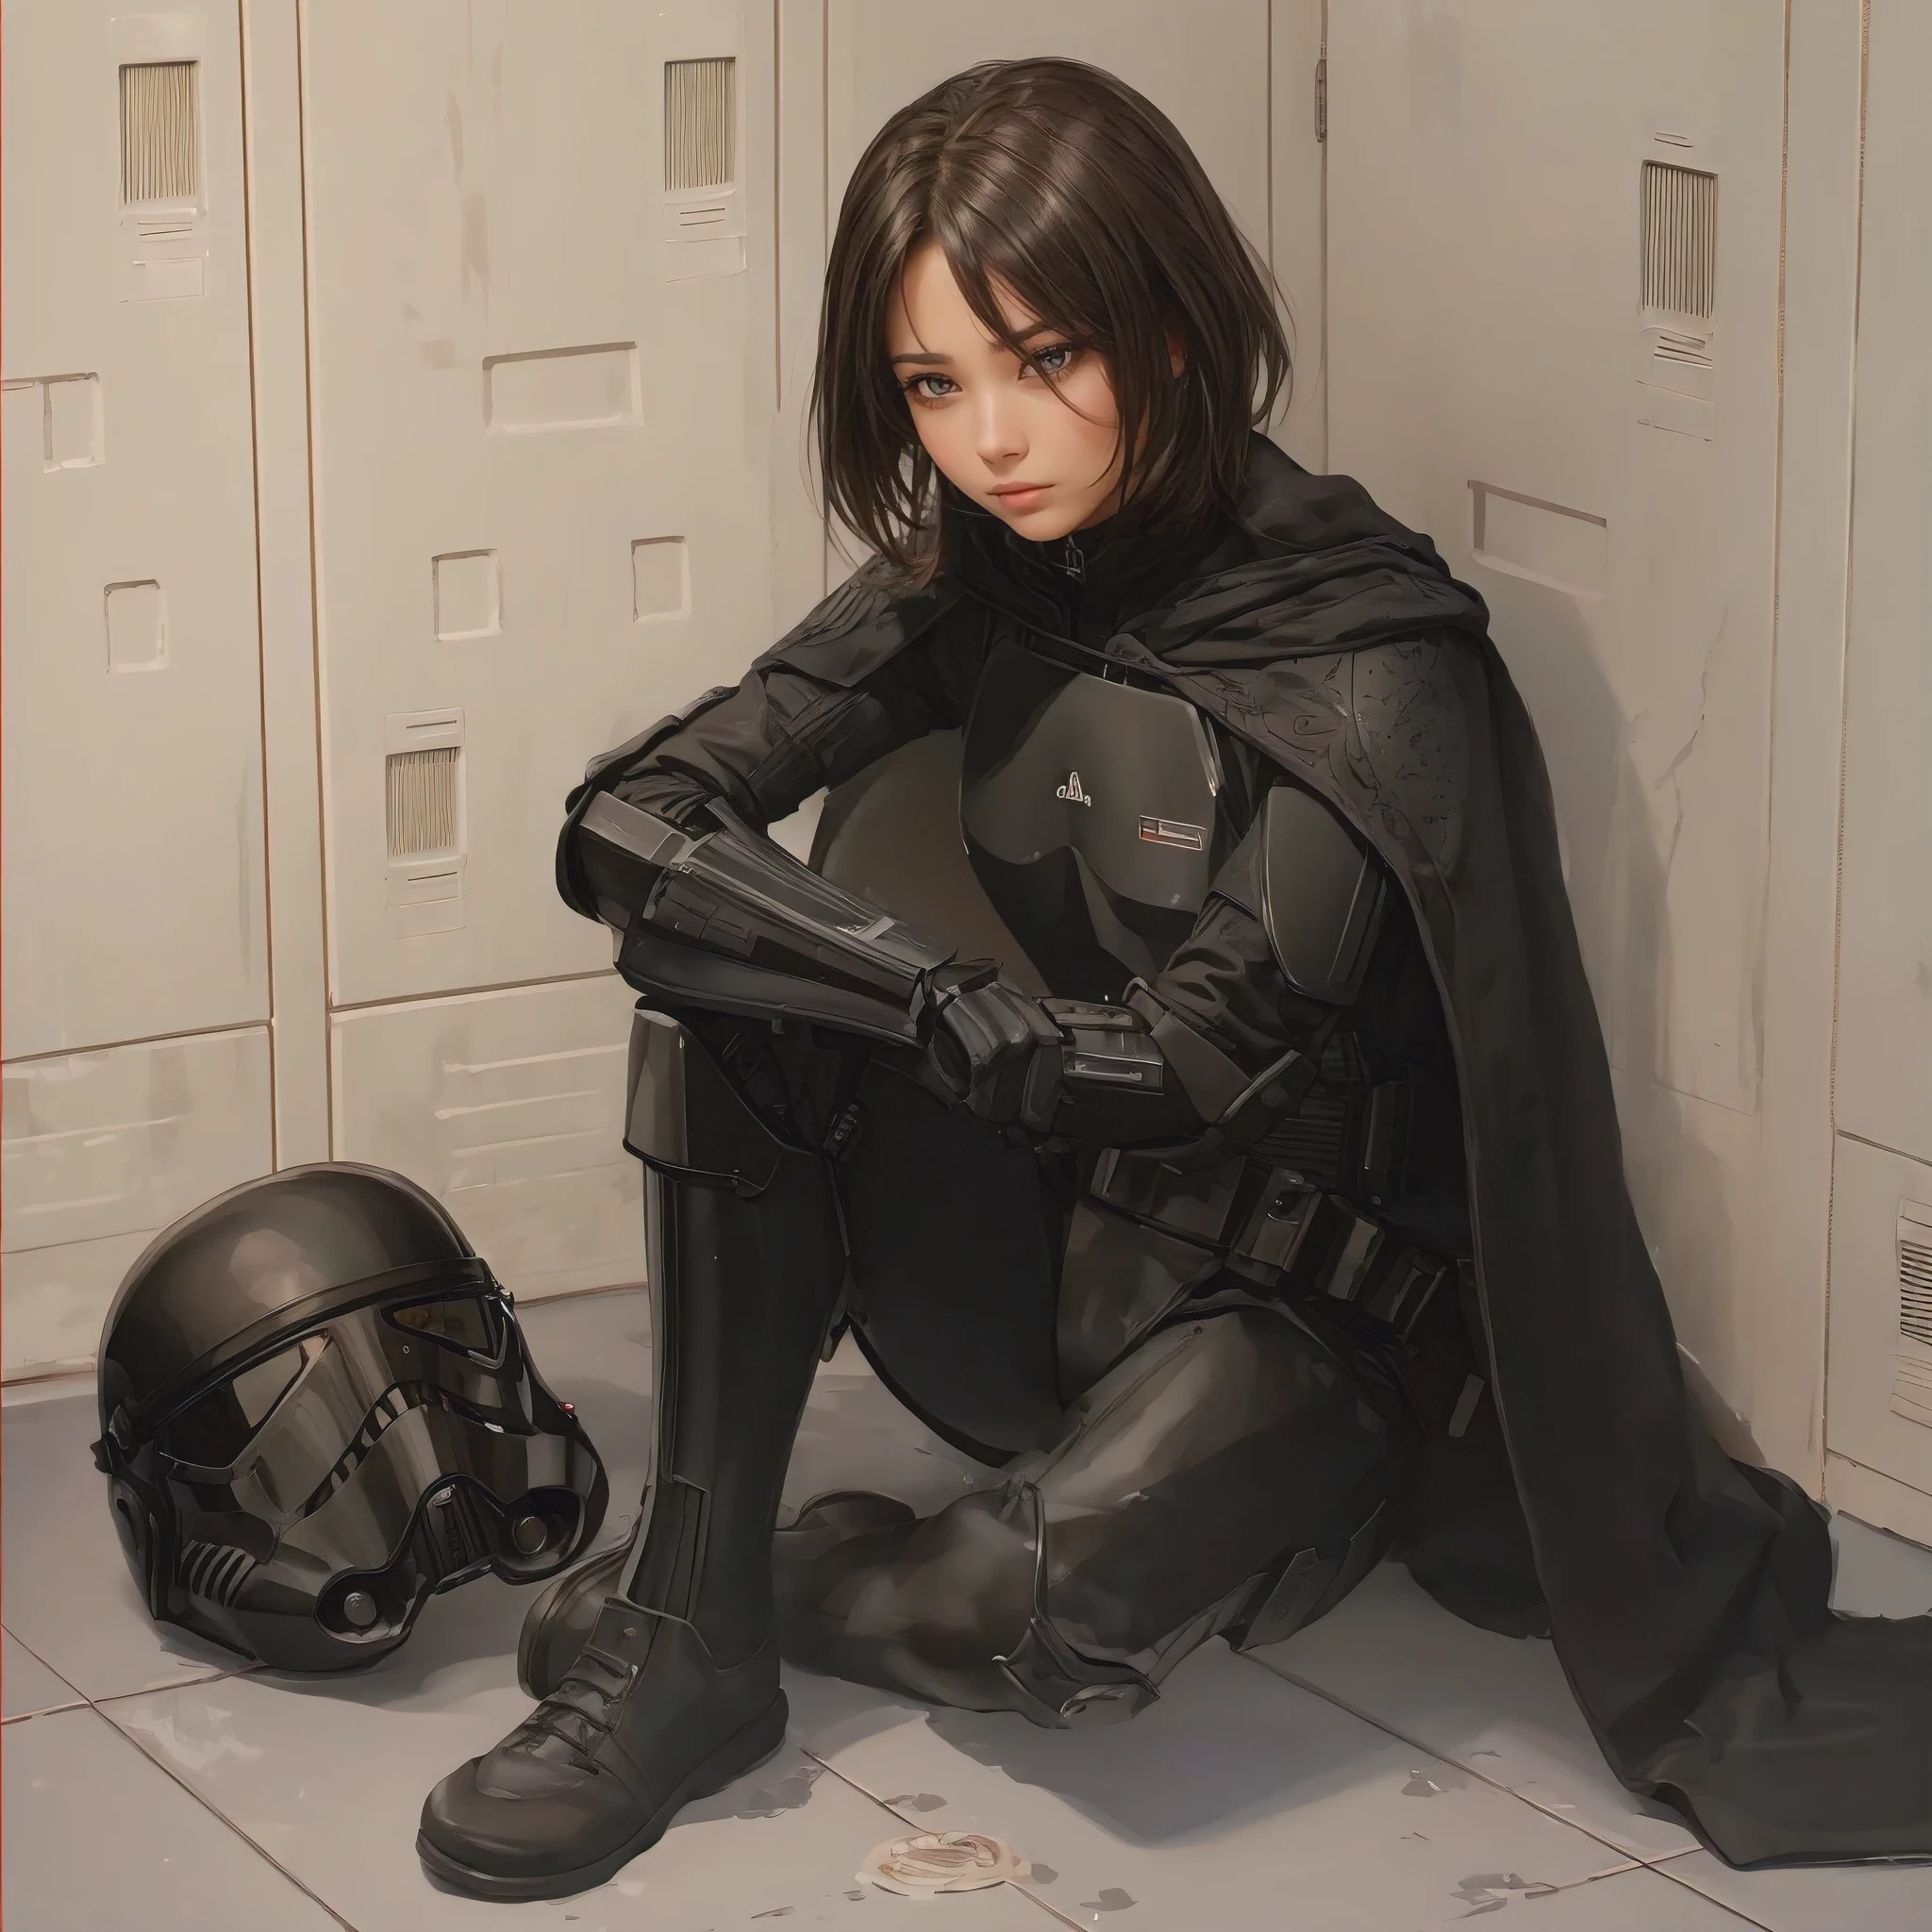 (傑作, 擊敗質量, 超詳細:1.3), 女冲锋队员, 坐在軍械庫更衣室, 黑色飛行員裝甲, 地板上的黑色頭盔, 全身, 簡單的角色設計